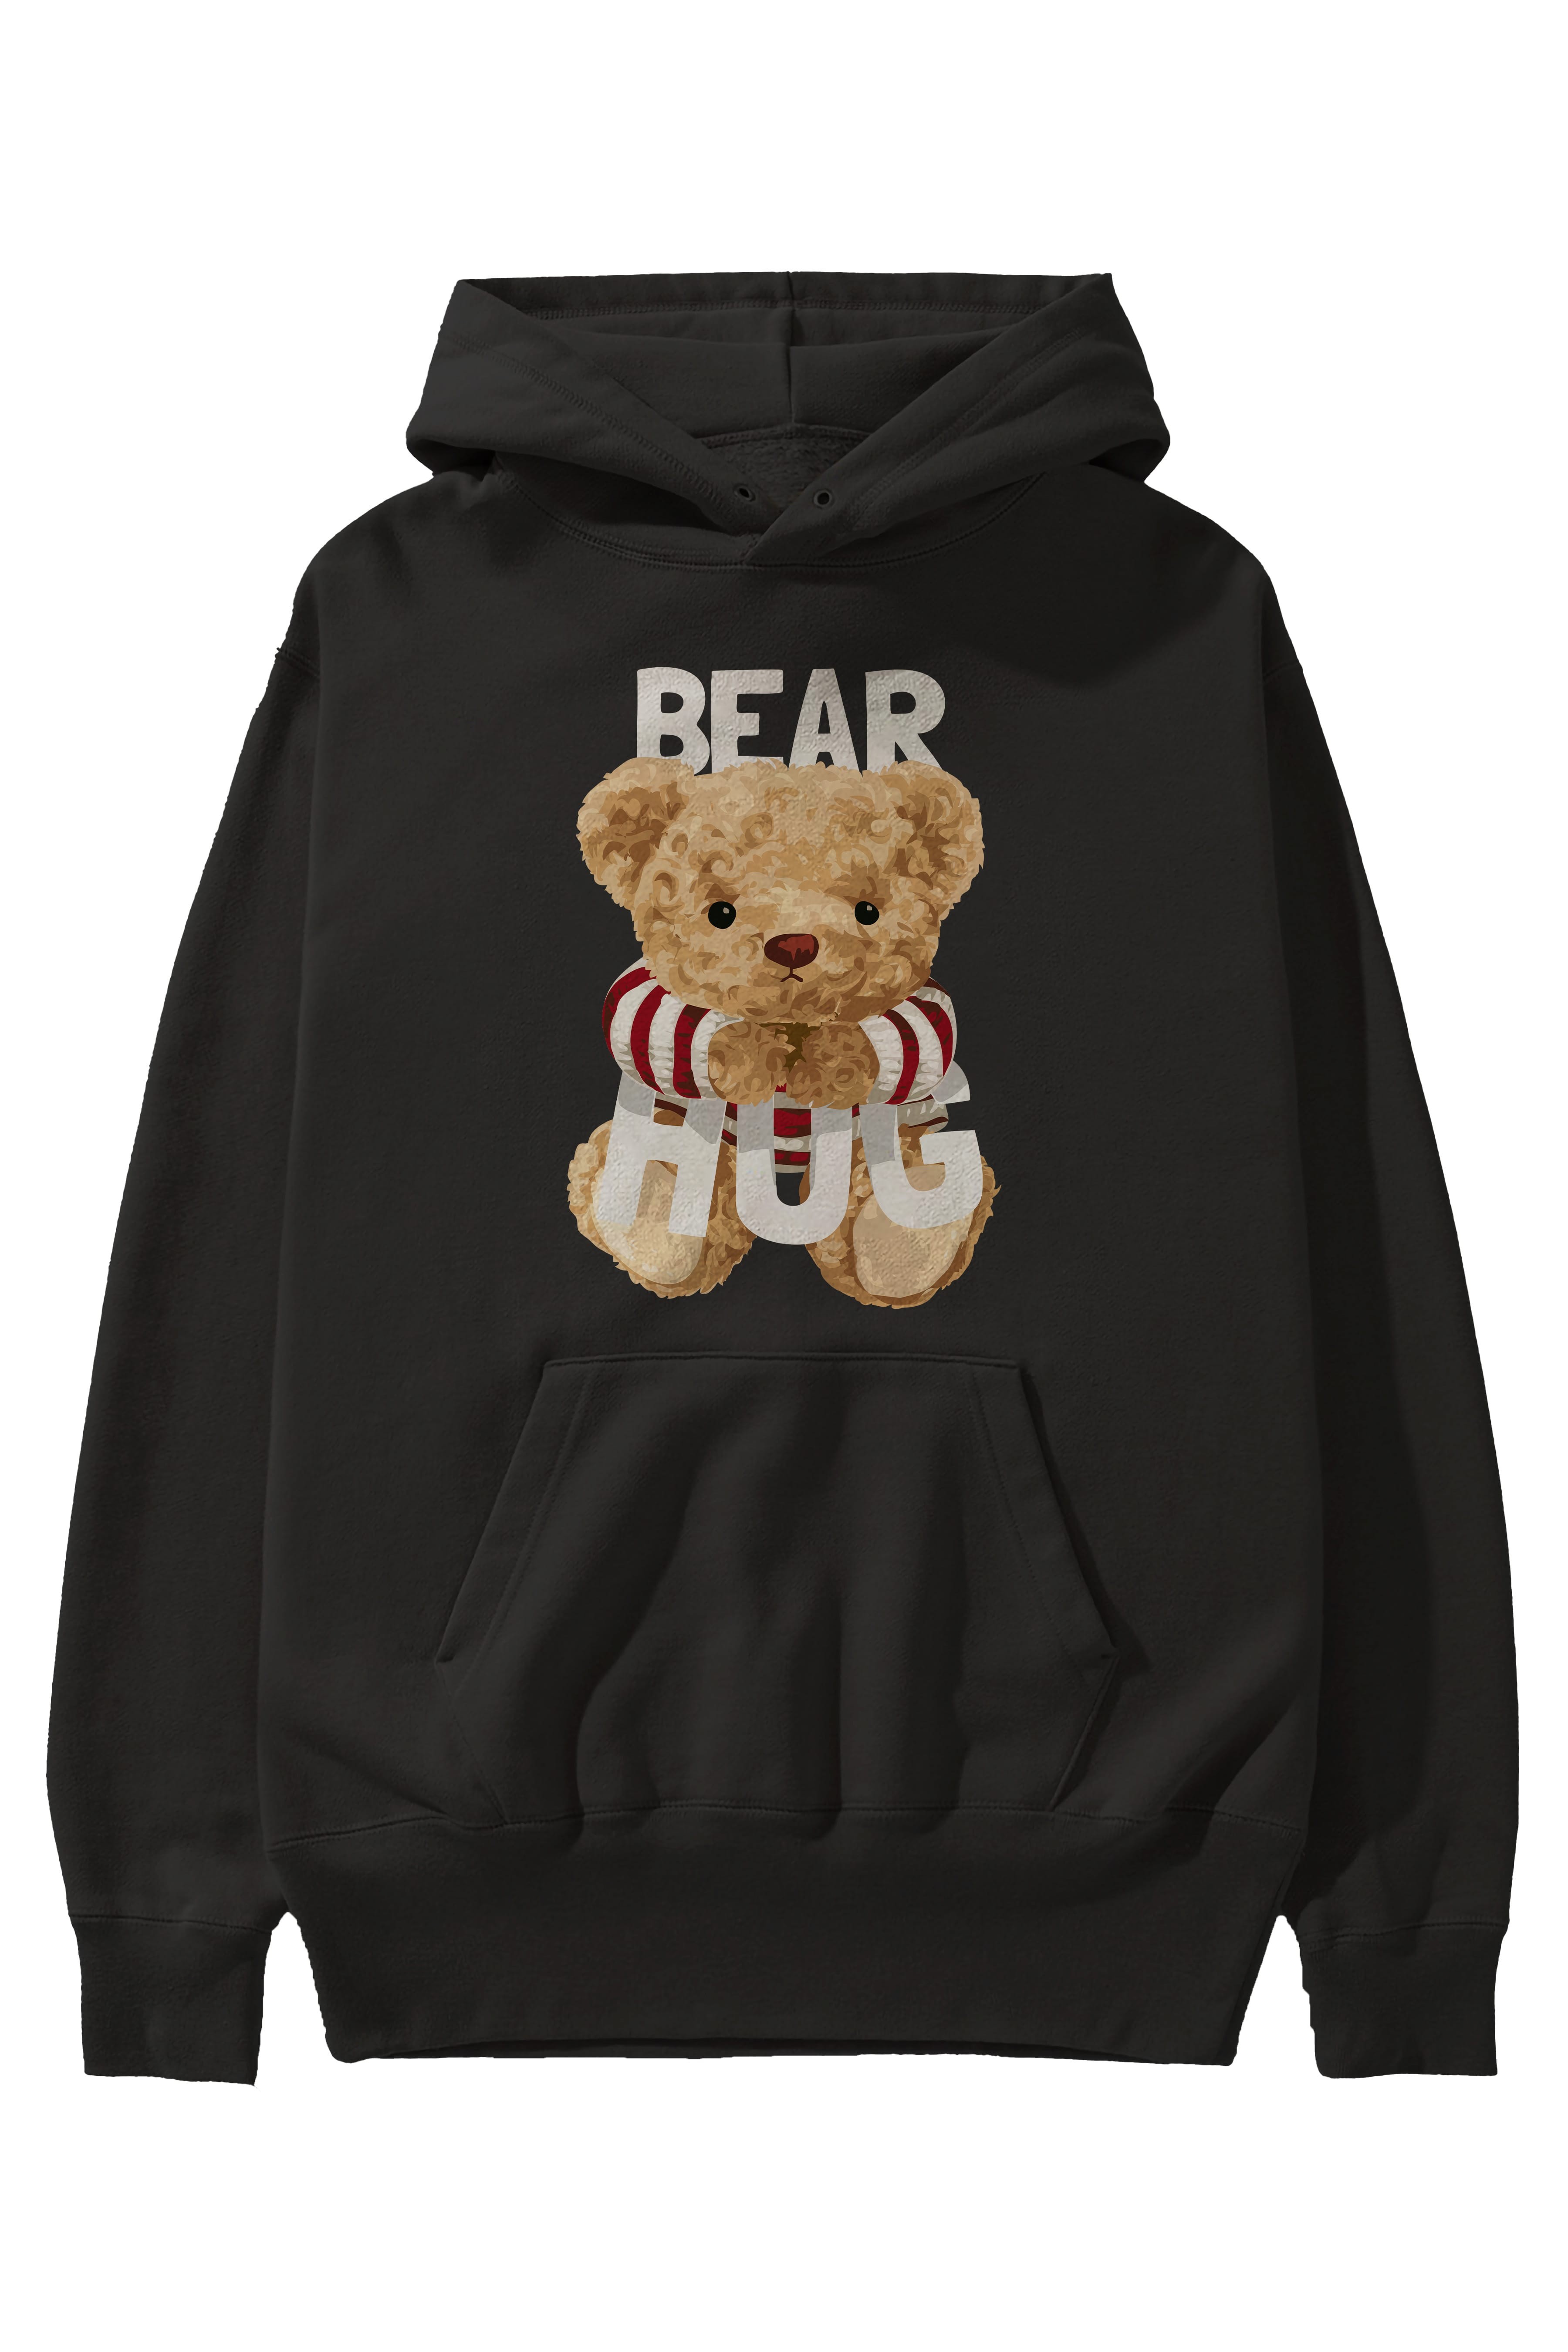 Teddy Bear Hug Ön Baskılı Hoodie Oversize Kapüşonlu Sweatshirt Erkek Kadın Unisex